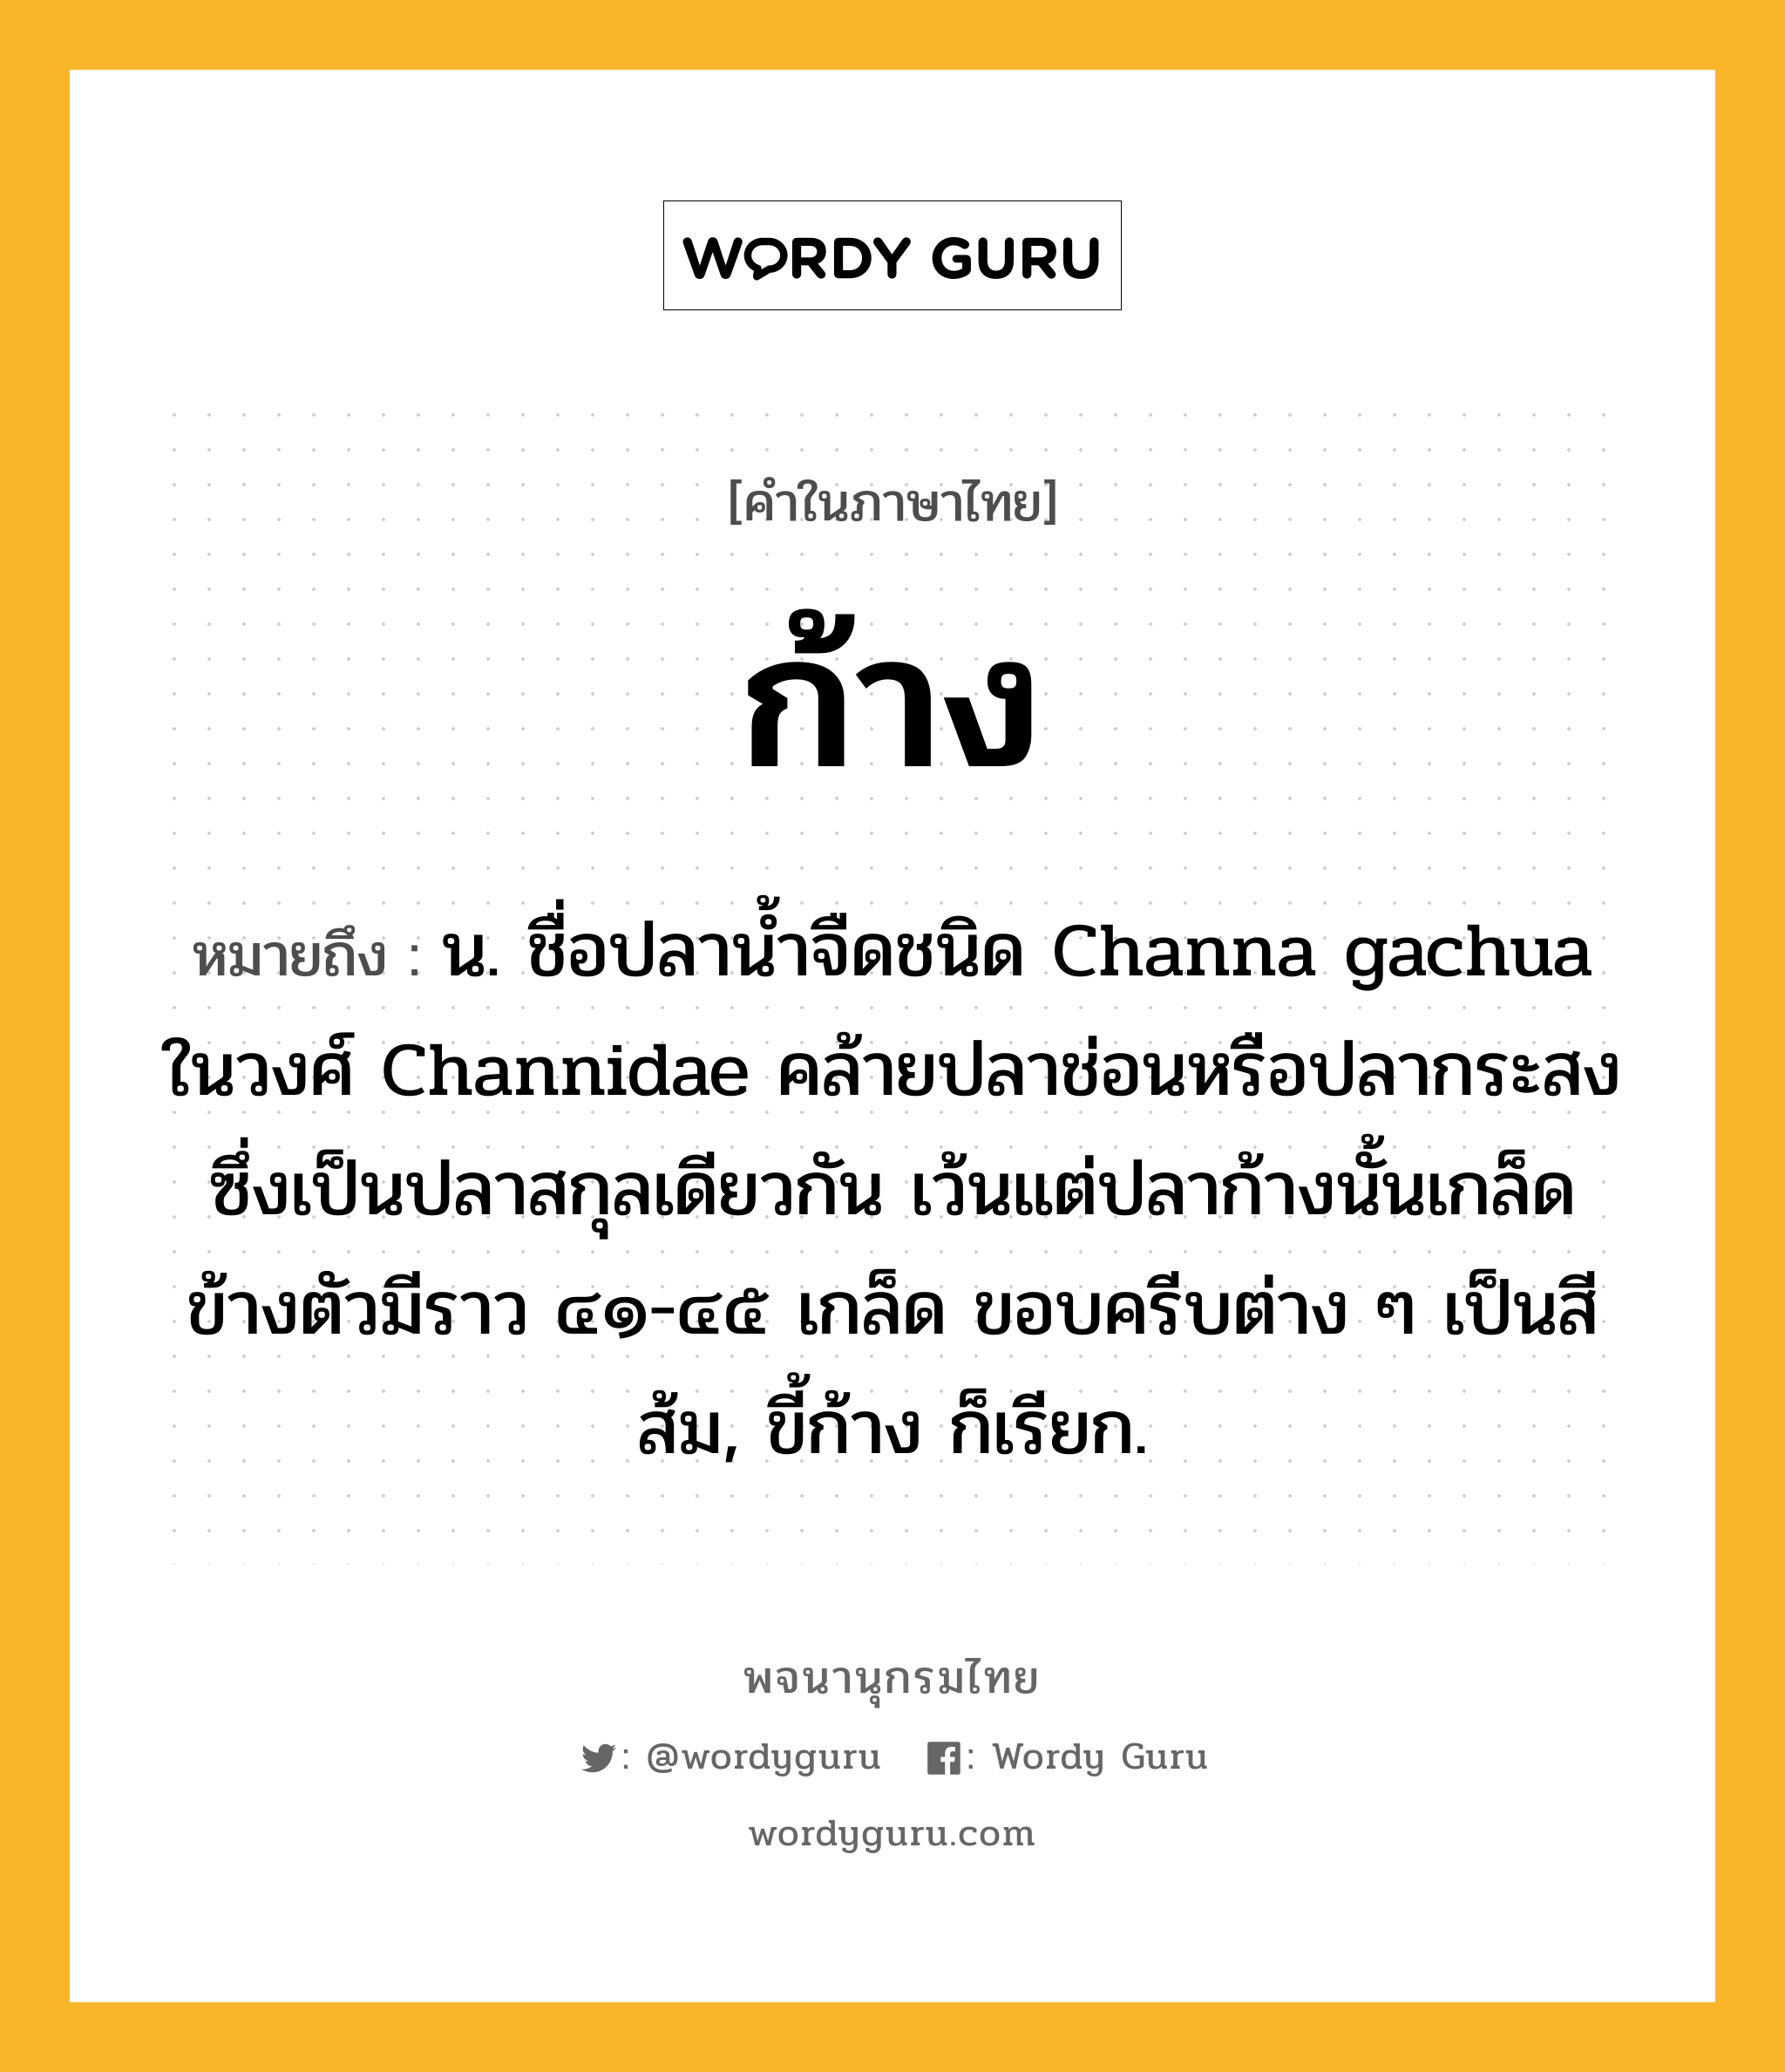 ก้าง ความหมาย หมายถึงอะไร?, คำในภาษาไทย ก้าง หมายถึง น. ชื่อปลานํ้าจืดชนิด Channa gachua ในวงศ์ Channidae คล้ายปลาช่อนหรือปลากระสงซึ่งเป็นปลาสกุลเดียวกัน เว้นแต่ปลาก้างนั้นเกล็ดข้างตัวมีราว ๔๑-๔๕ เกล็ด ขอบครีบต่าง ๆ เป็นสีส้ม, ขี้ก้าง ก็เรียก.